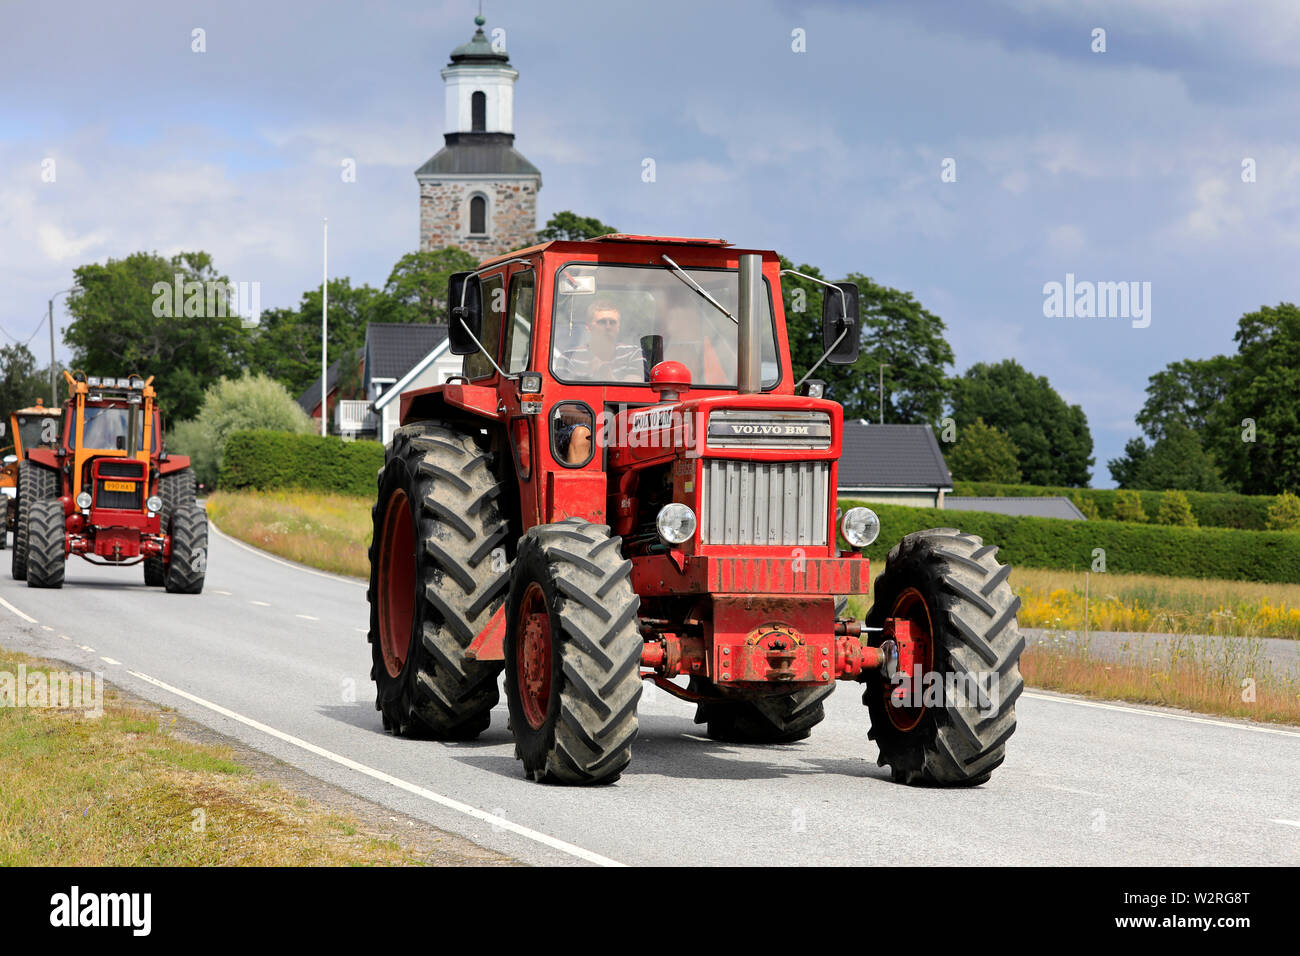 Kimito, Finnland. Juli 6, 2019. Red Volvo BM 814 Traktor auf Kimito  Tractorkavalkad, jährliche vintage Traktor Parade. Die 814 wurde 1969  eingeführt Stockfotografie - Alamy